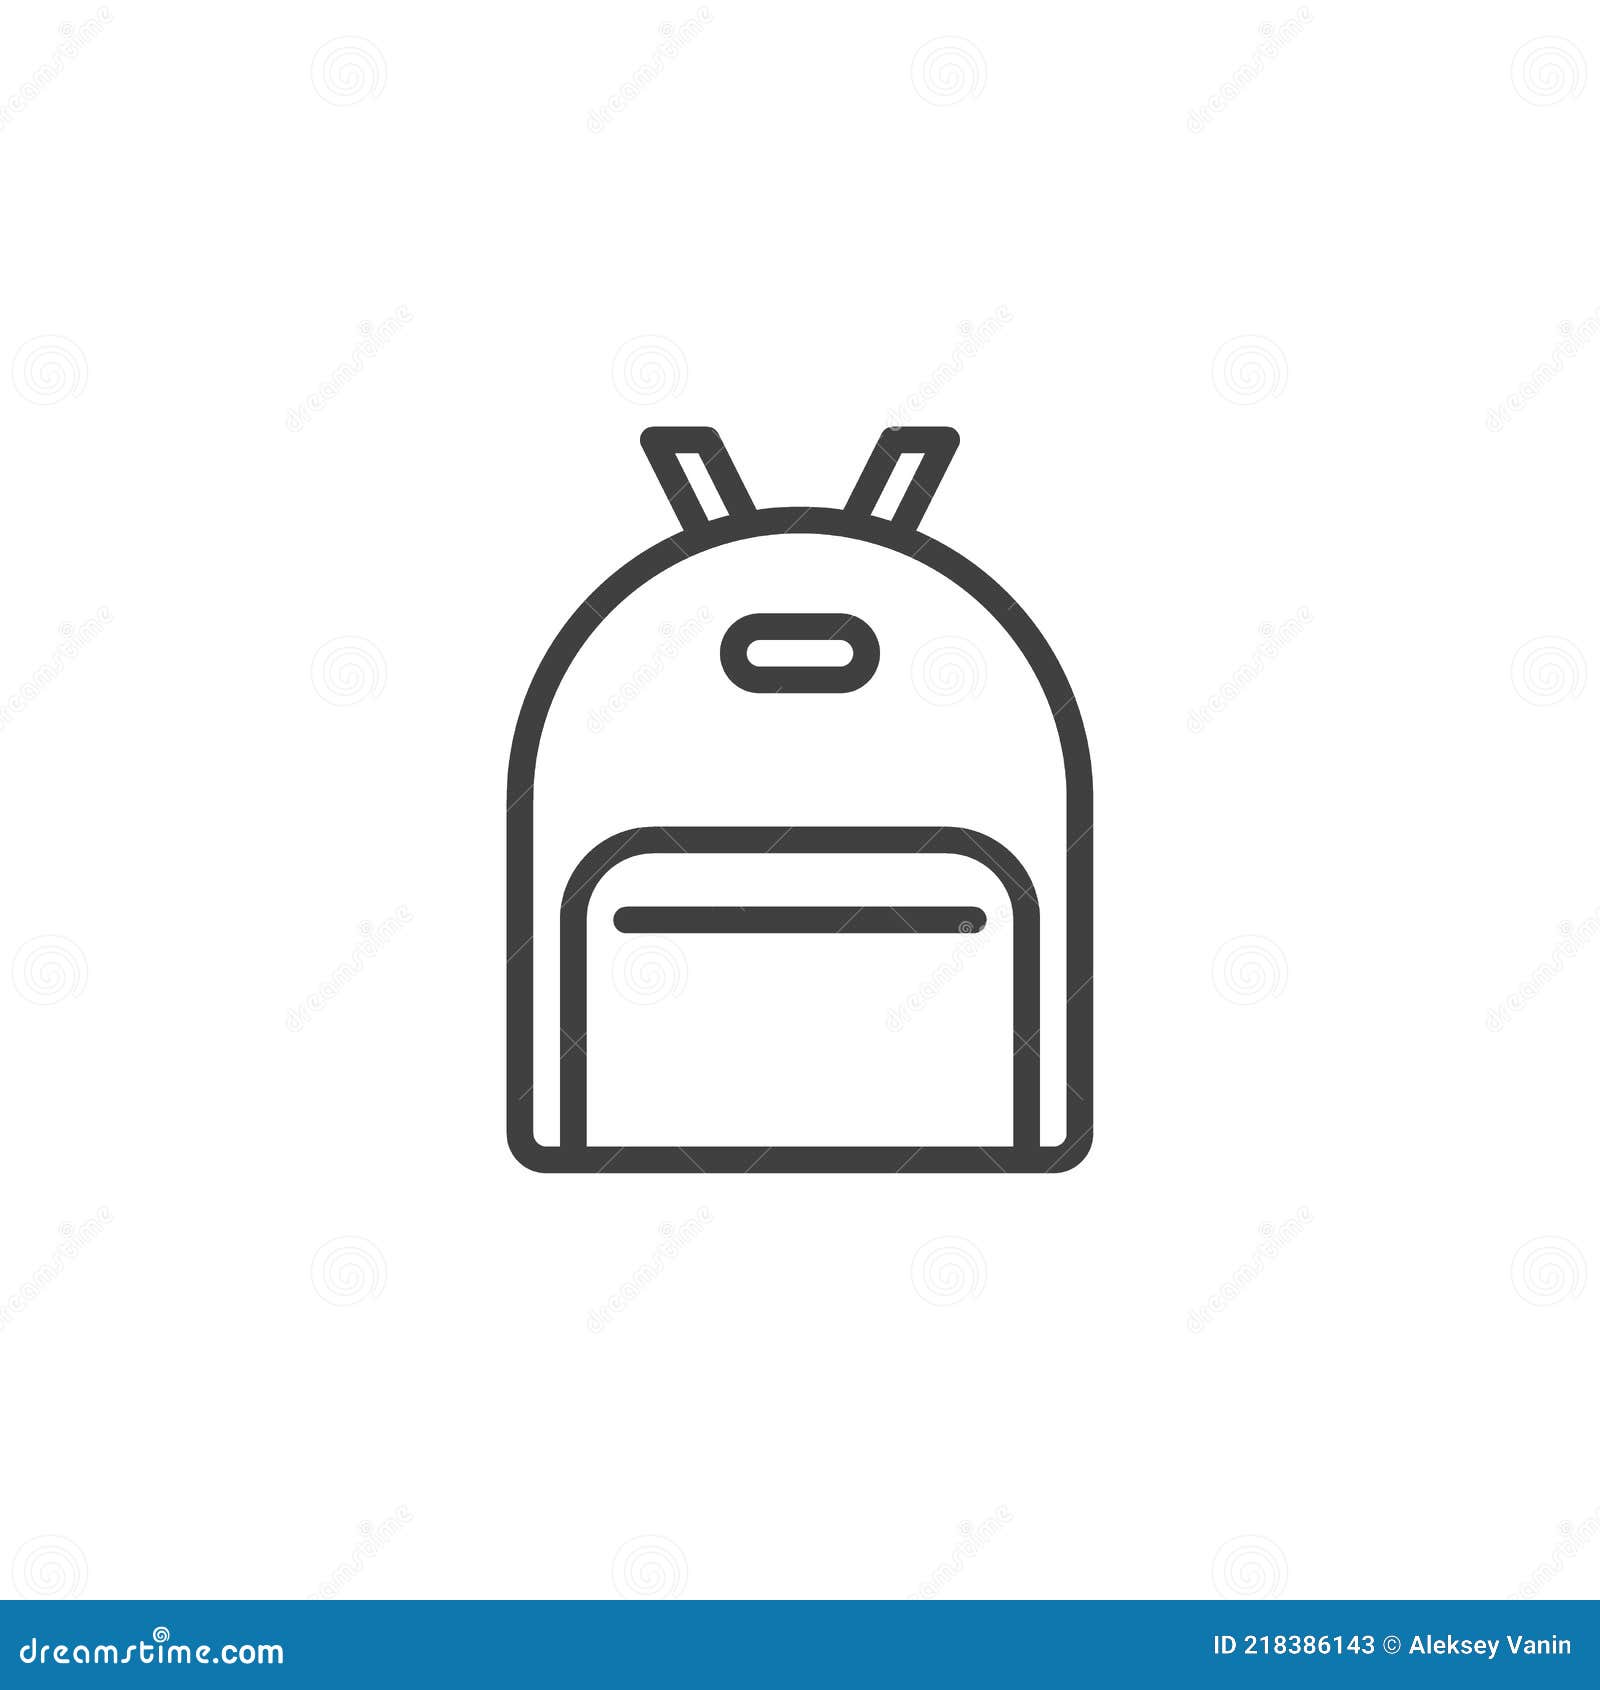 School Bag line icon stock vector. Illustration of schoolbag - 218386143